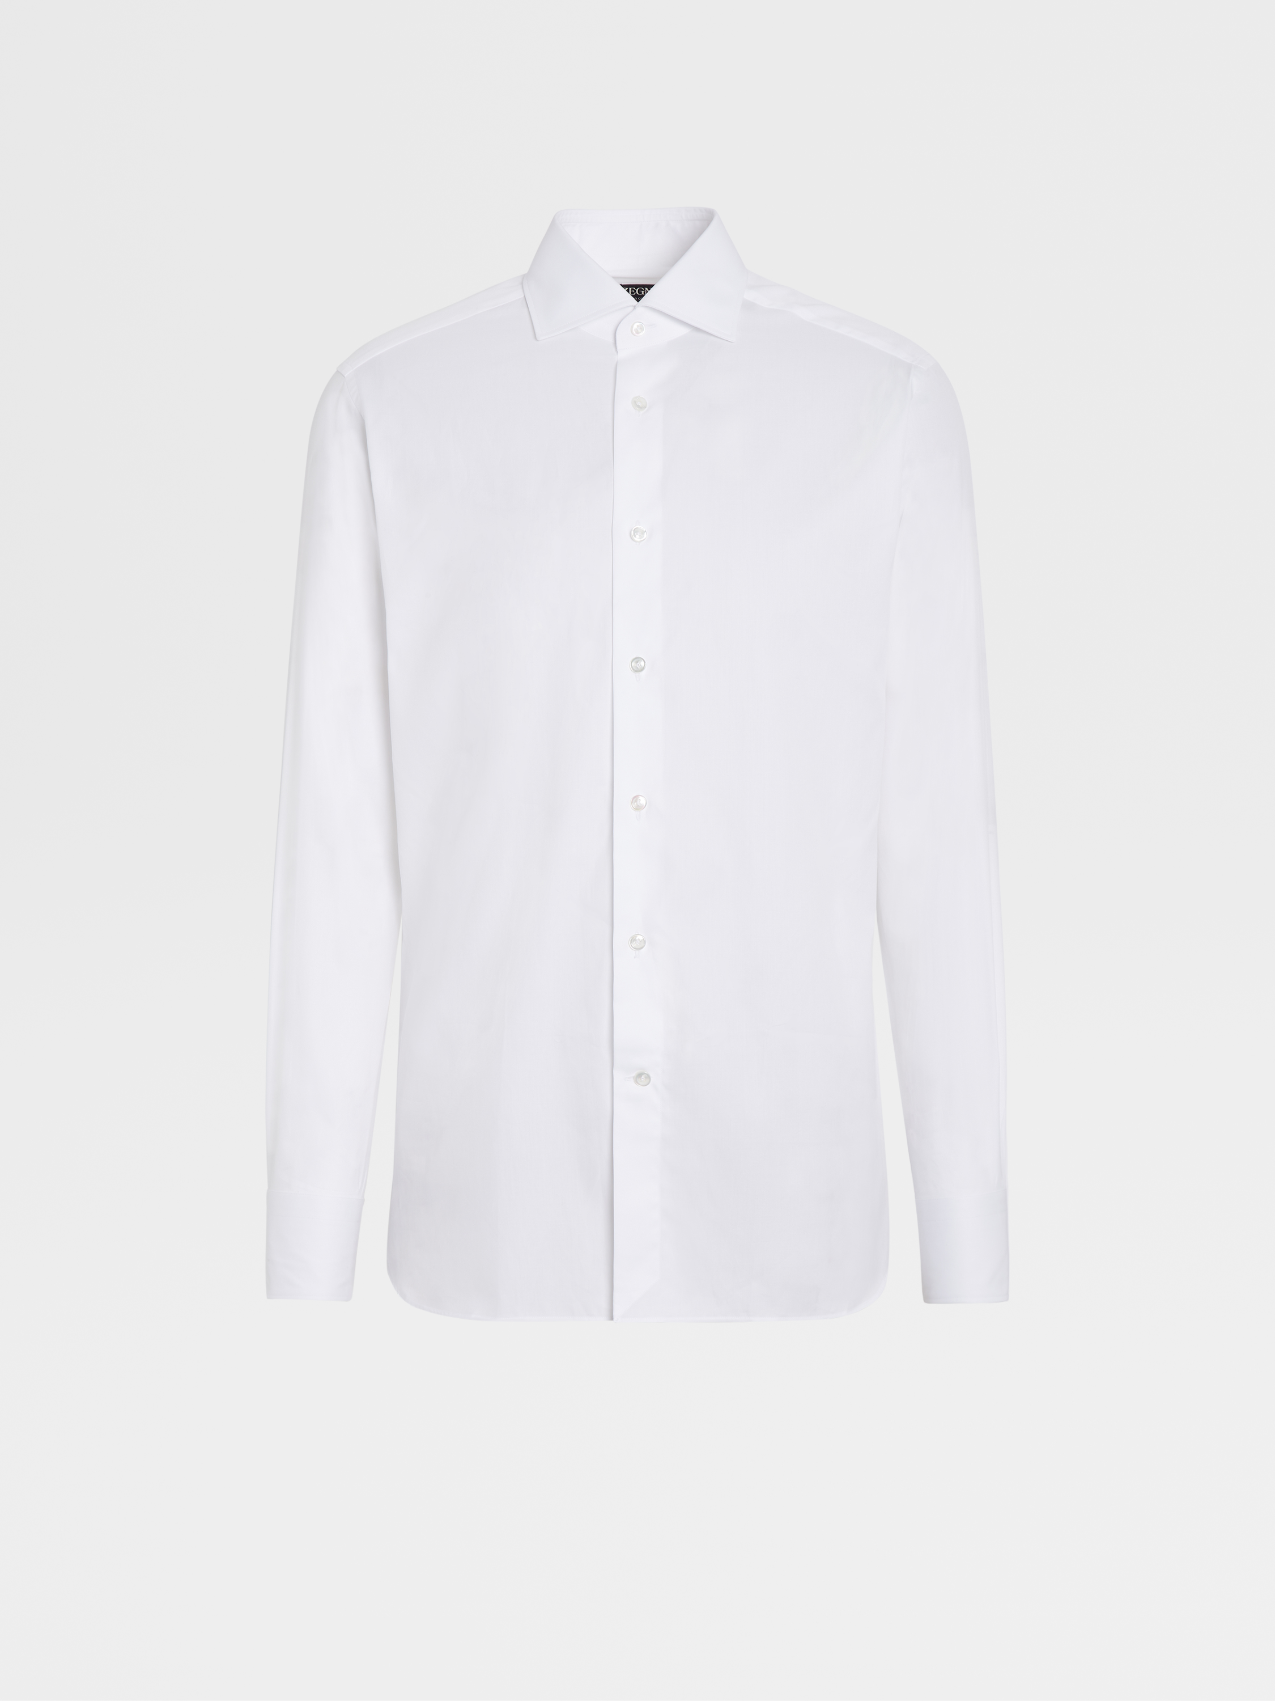 White 300 Cotton Long-sleeve Tailoring Shirt